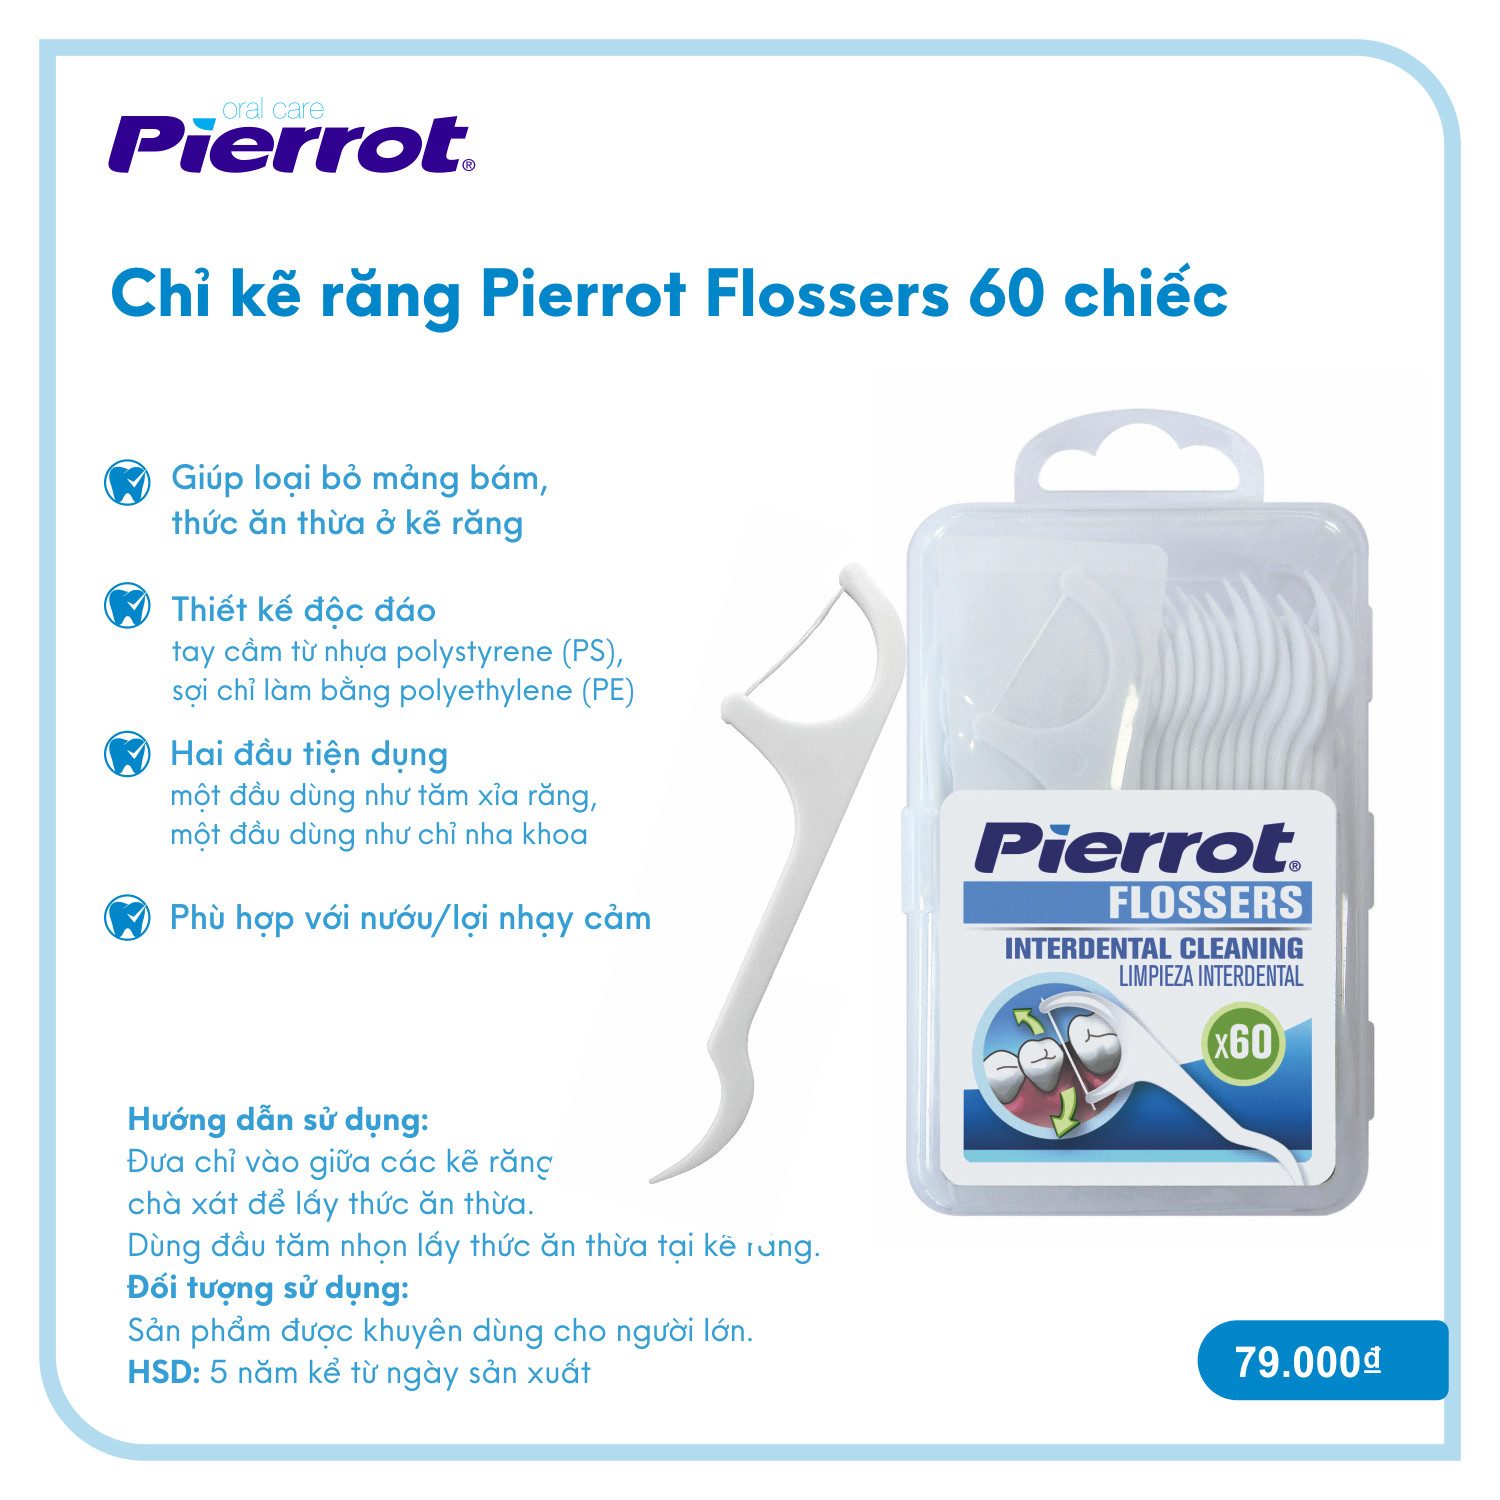 Chỉ kẽ răng Pierrot Flossers 60 chiếc làm sạch kẽ răng, ngừa mảng bám